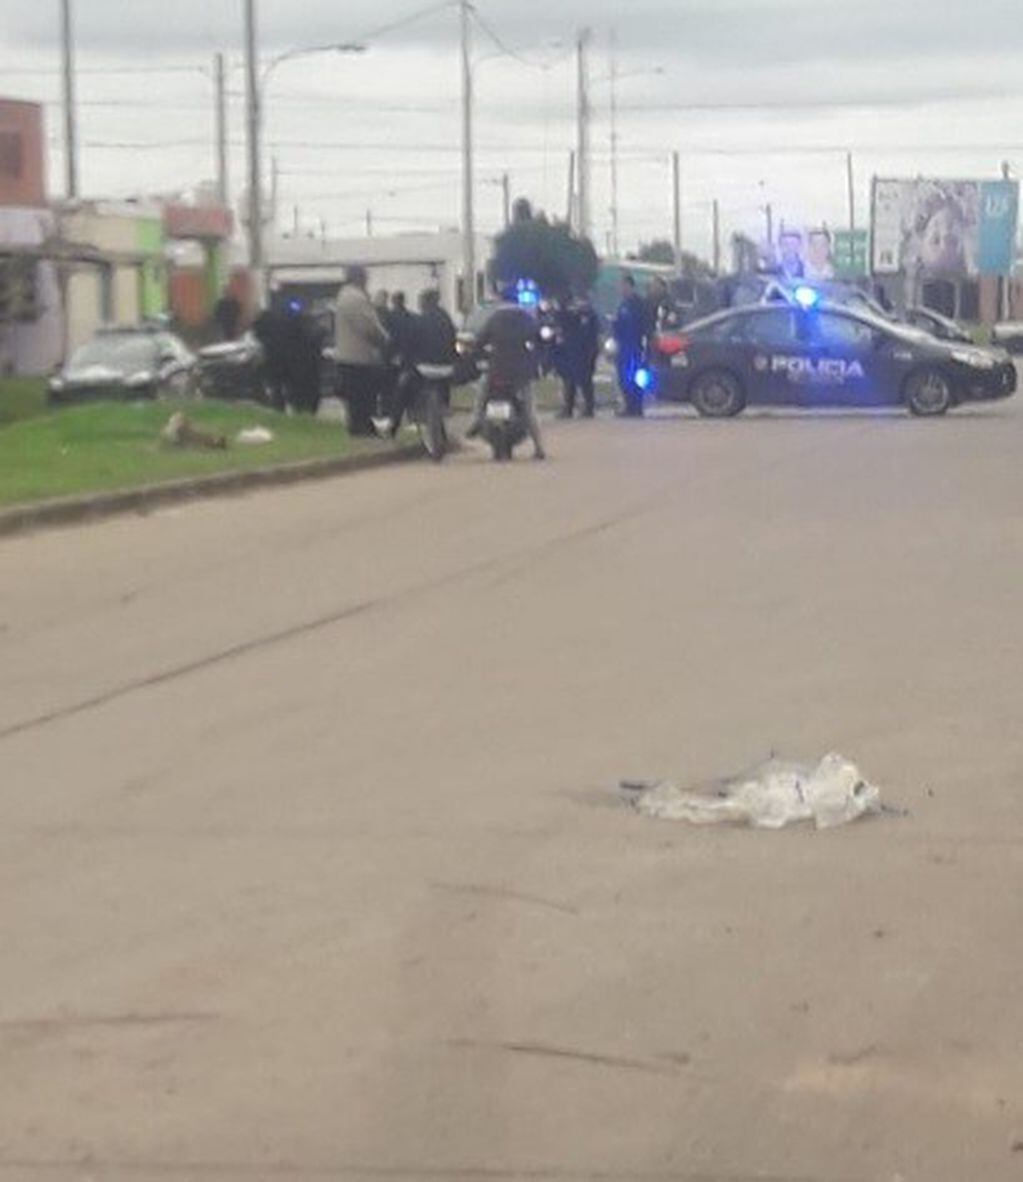 Persecución policial termina con otro patrullero destrozado (@emergenciasAR)